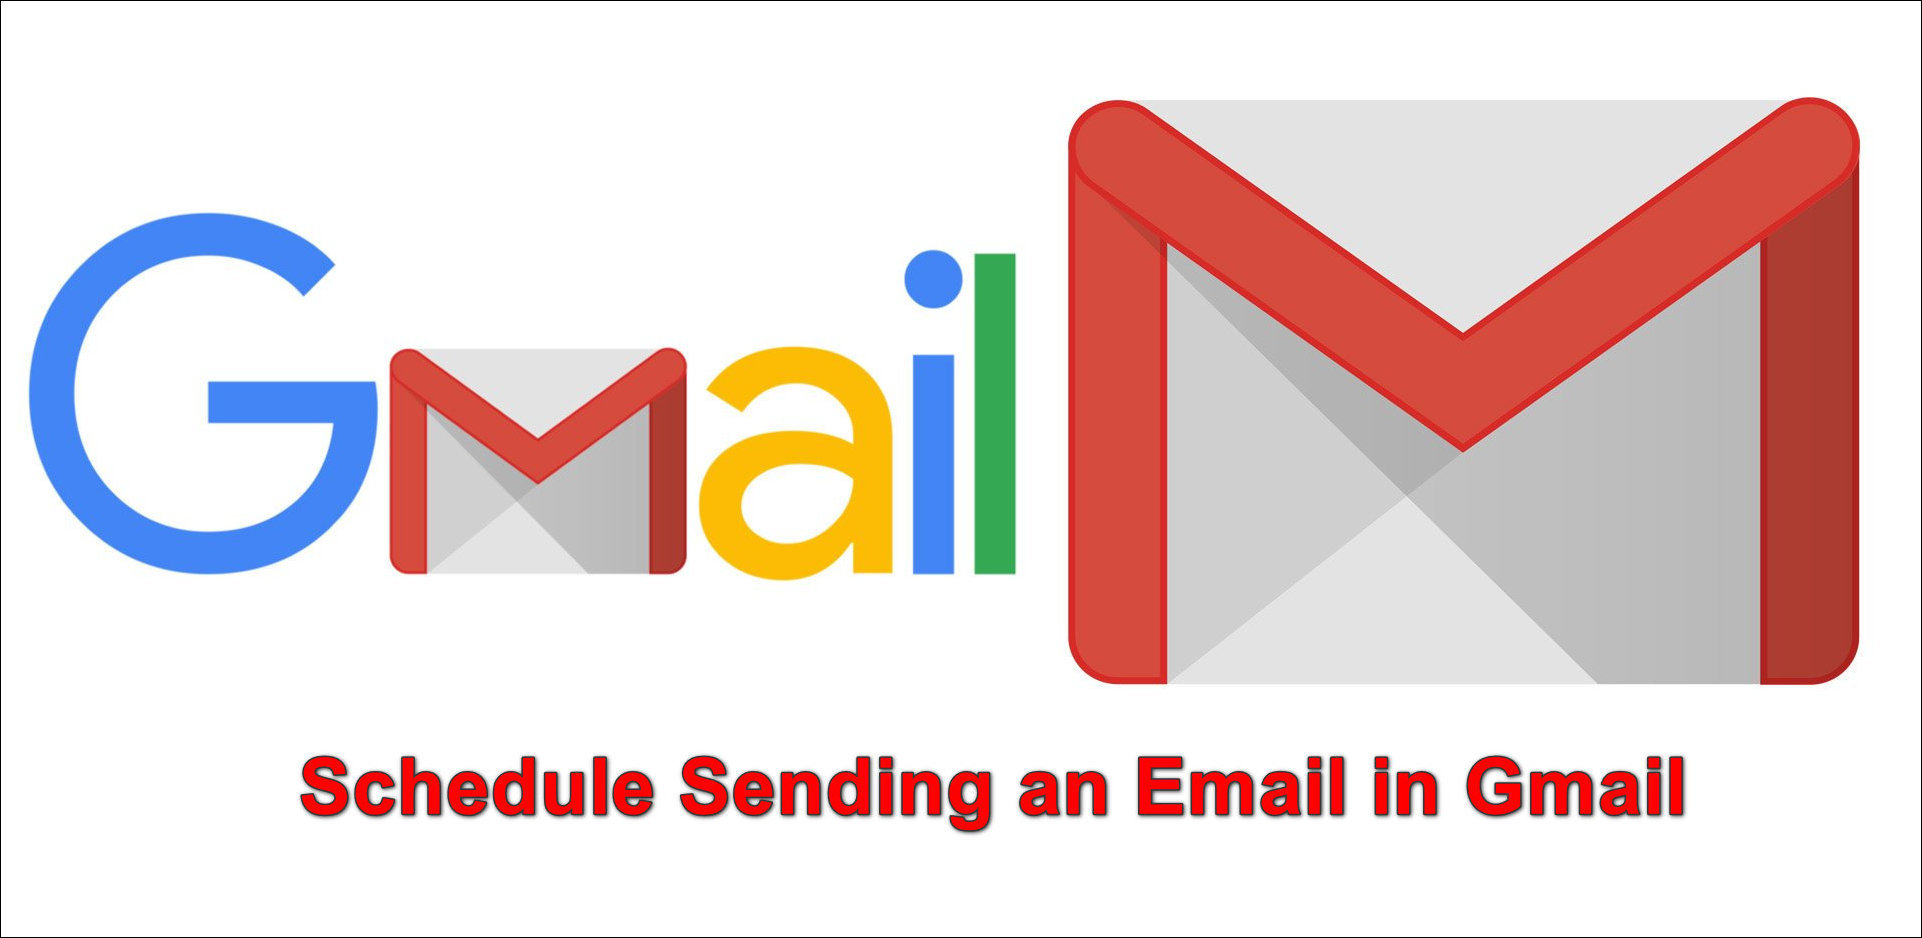 Hvordan planlegge sending av e-post i Gmail?